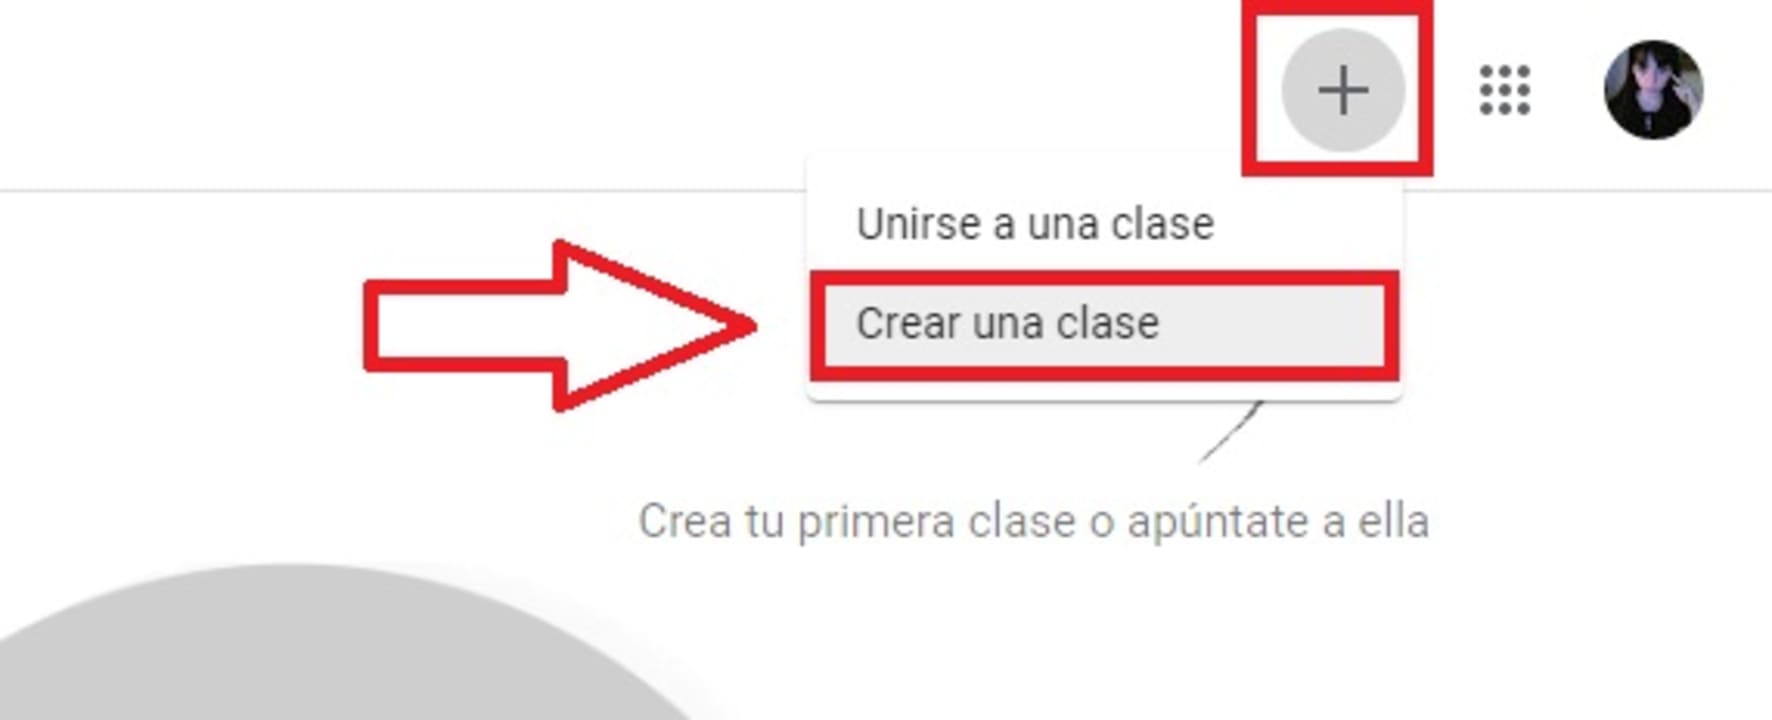 Cómo crear una clase en Google Classroom